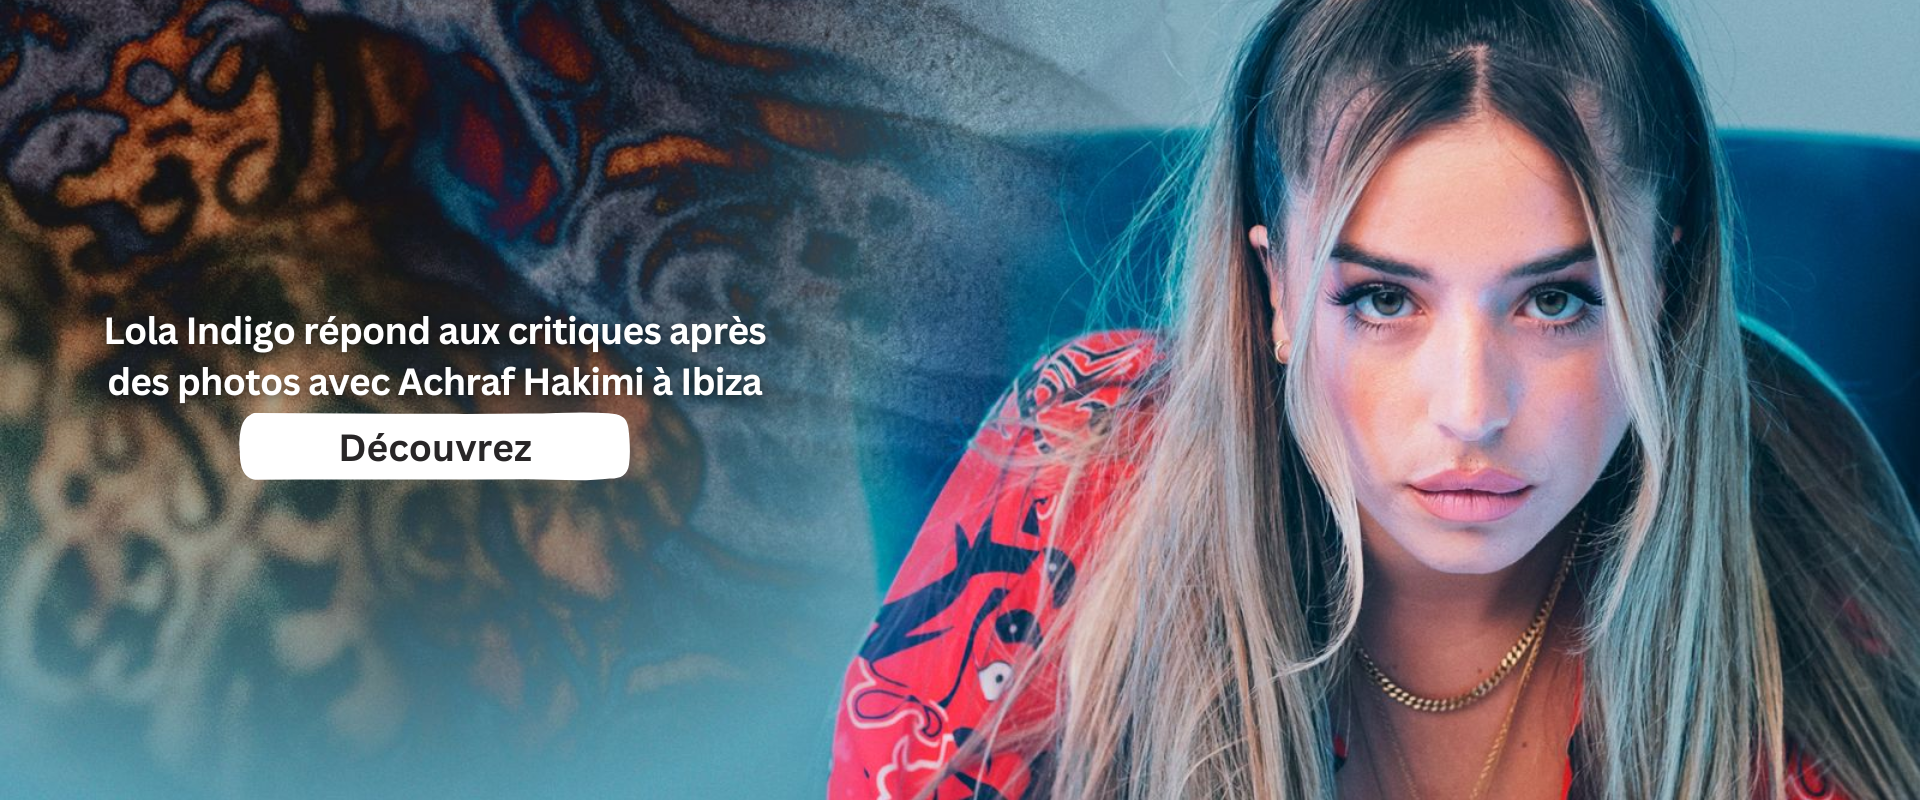 Lola Indigo répond aux critiques après des photos avec Achraf Hakimi à Ibiza